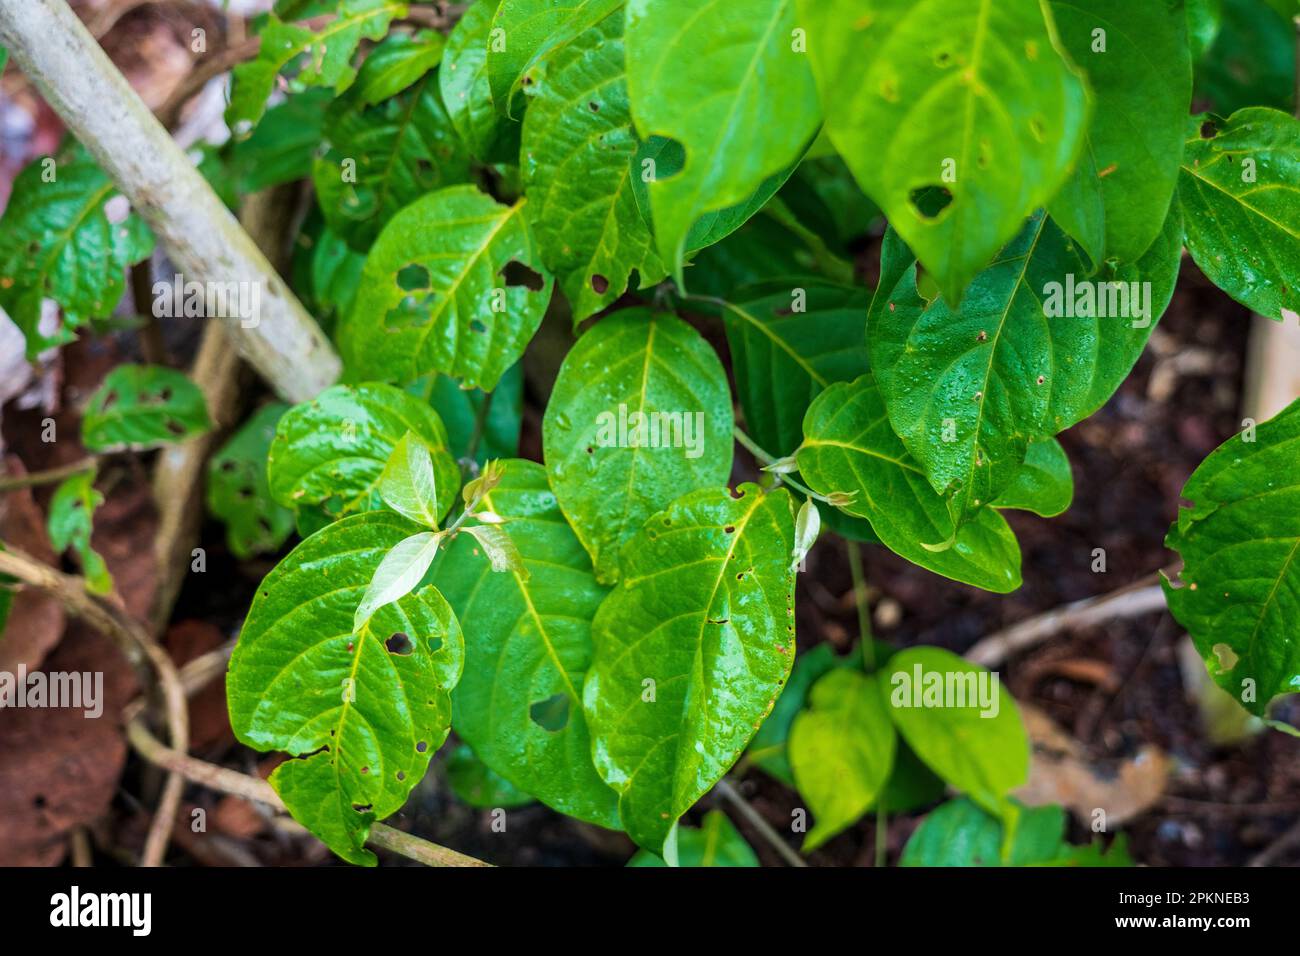 L'ayahuasca (Banisteriopsis caapi) è una pianta bollita e distillata utilizzata nella pratica sacra e rituale del bacino del Rio delle Amazzoni Foto Stock